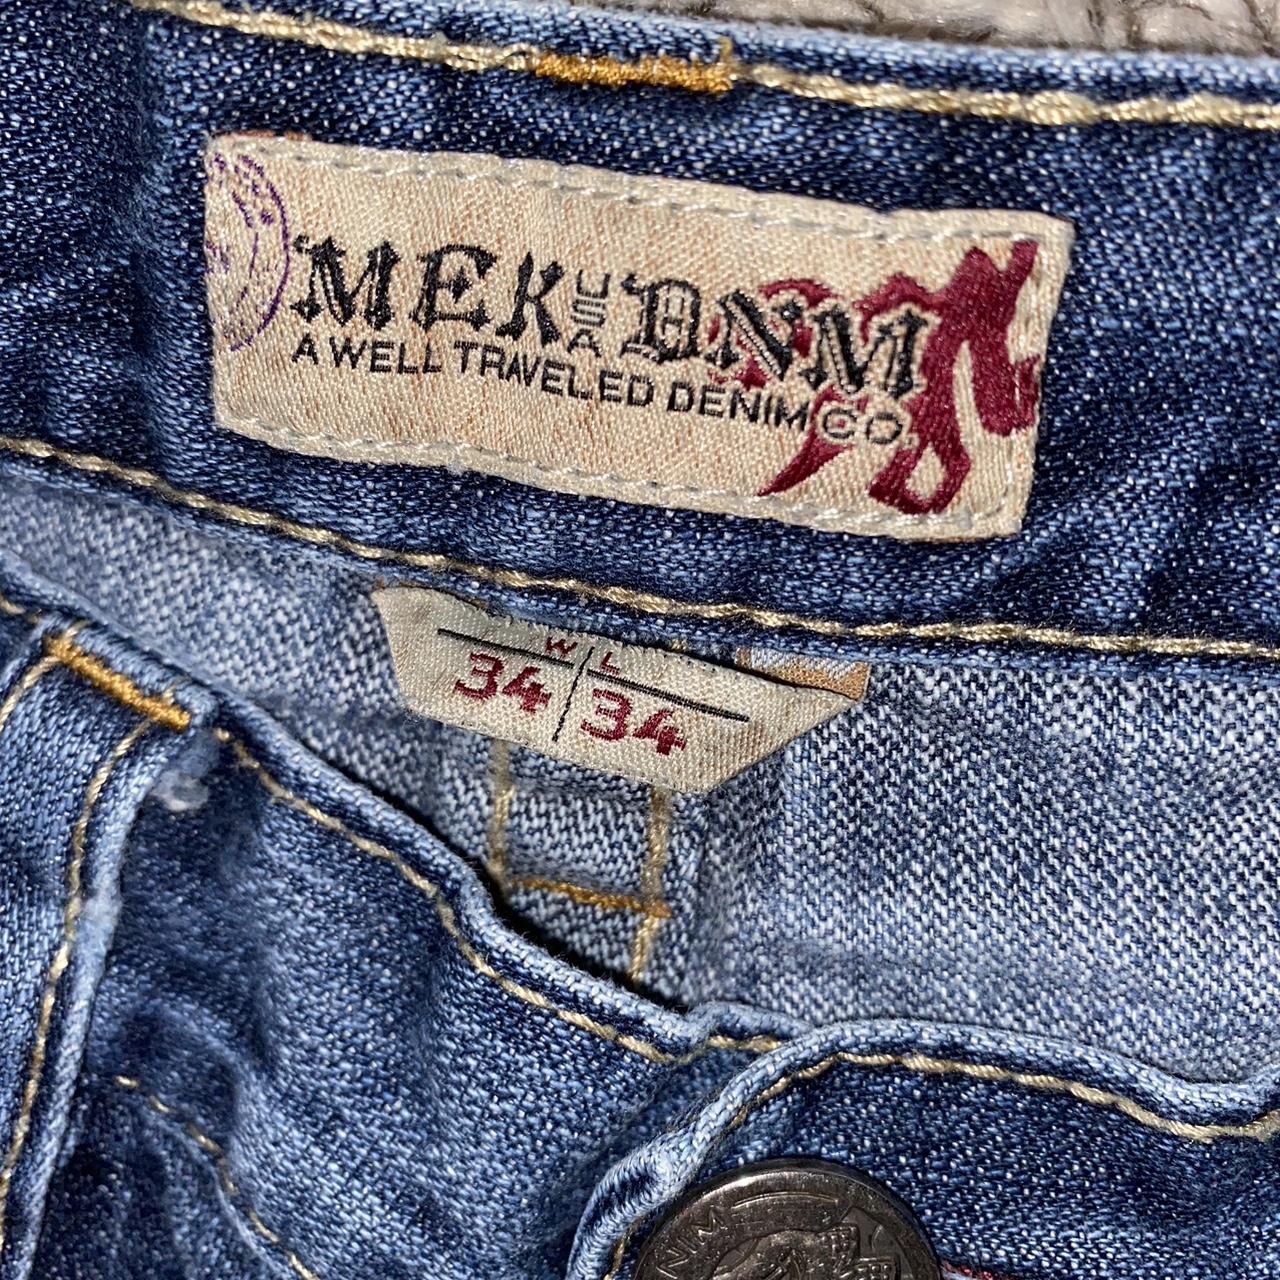 Mek embroidered denim jeans - size 34 x 34 - good... - Depop